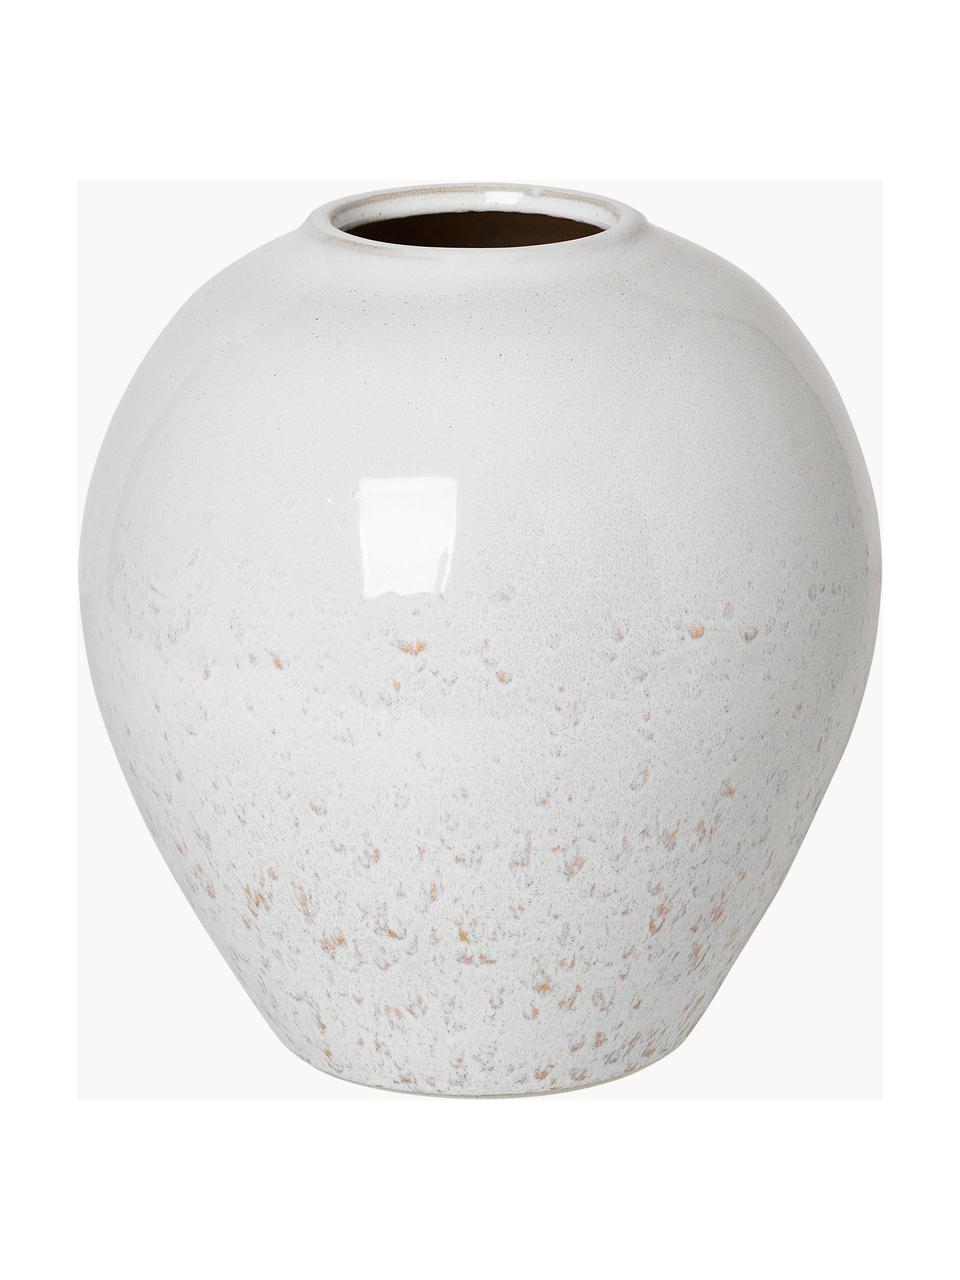 Handgefertigte Vase Ingrid aus Keramik, H 26 cm, Keramik, glasiert, Weiß, gesprenkelt, Ø 24 x H 26 cm